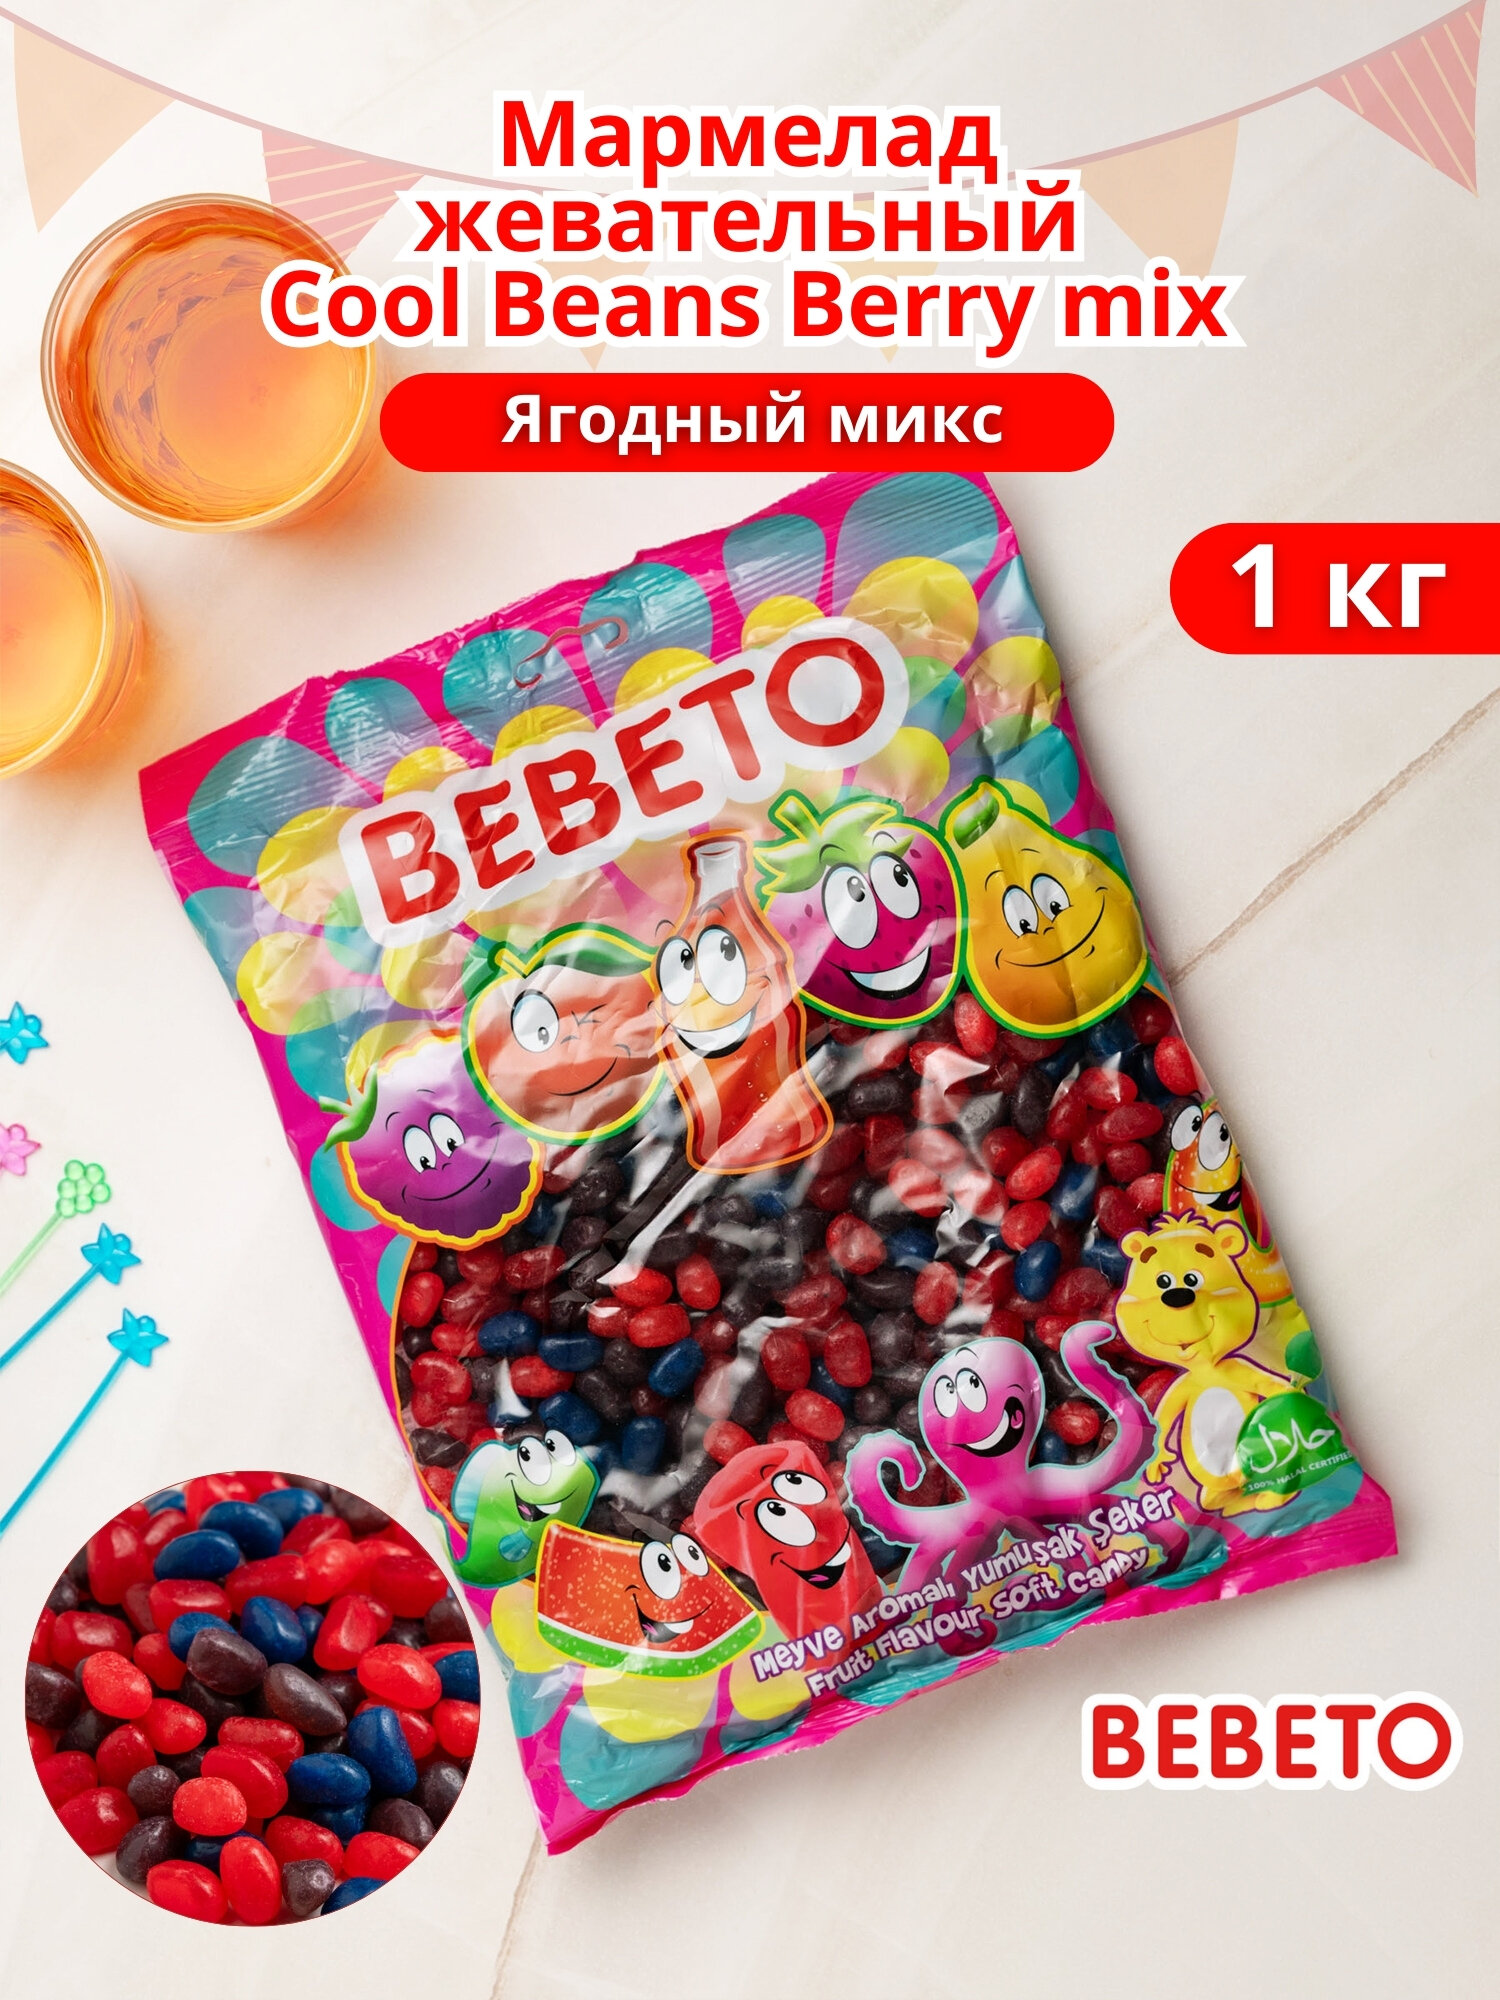 Мармелад жевательный Cool Beans Berry mix бобы Ягодный микс, 1 кг, BEBETO